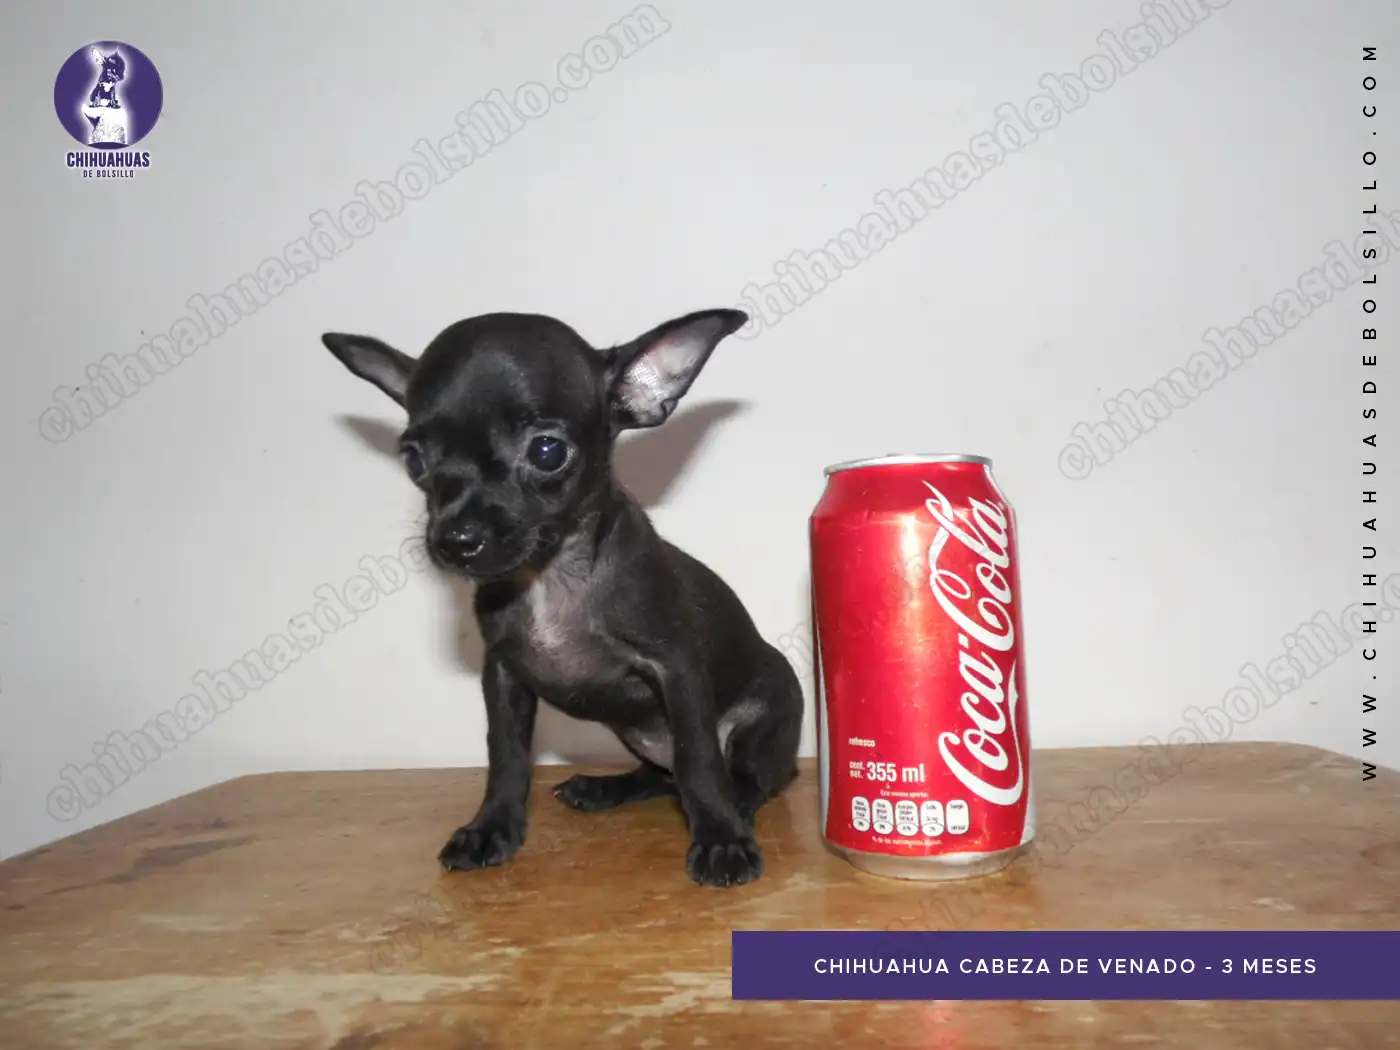 Chihuahua Cabeza de Venado 3 Meses